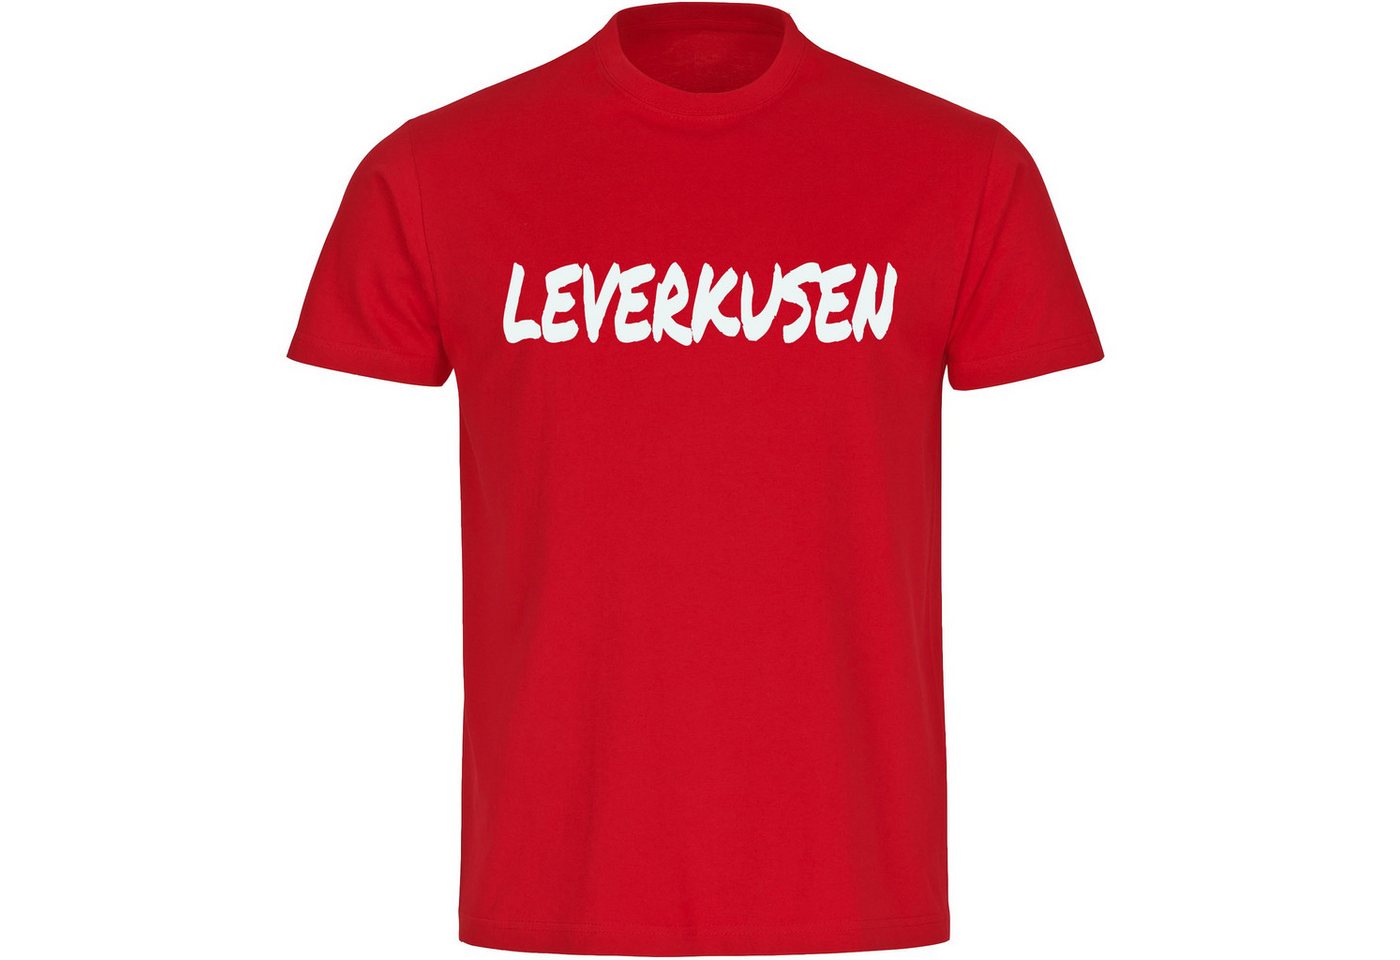 multifanshop T-Shirt Herren Leverkusen - Textmarker - Männer von multifanshop